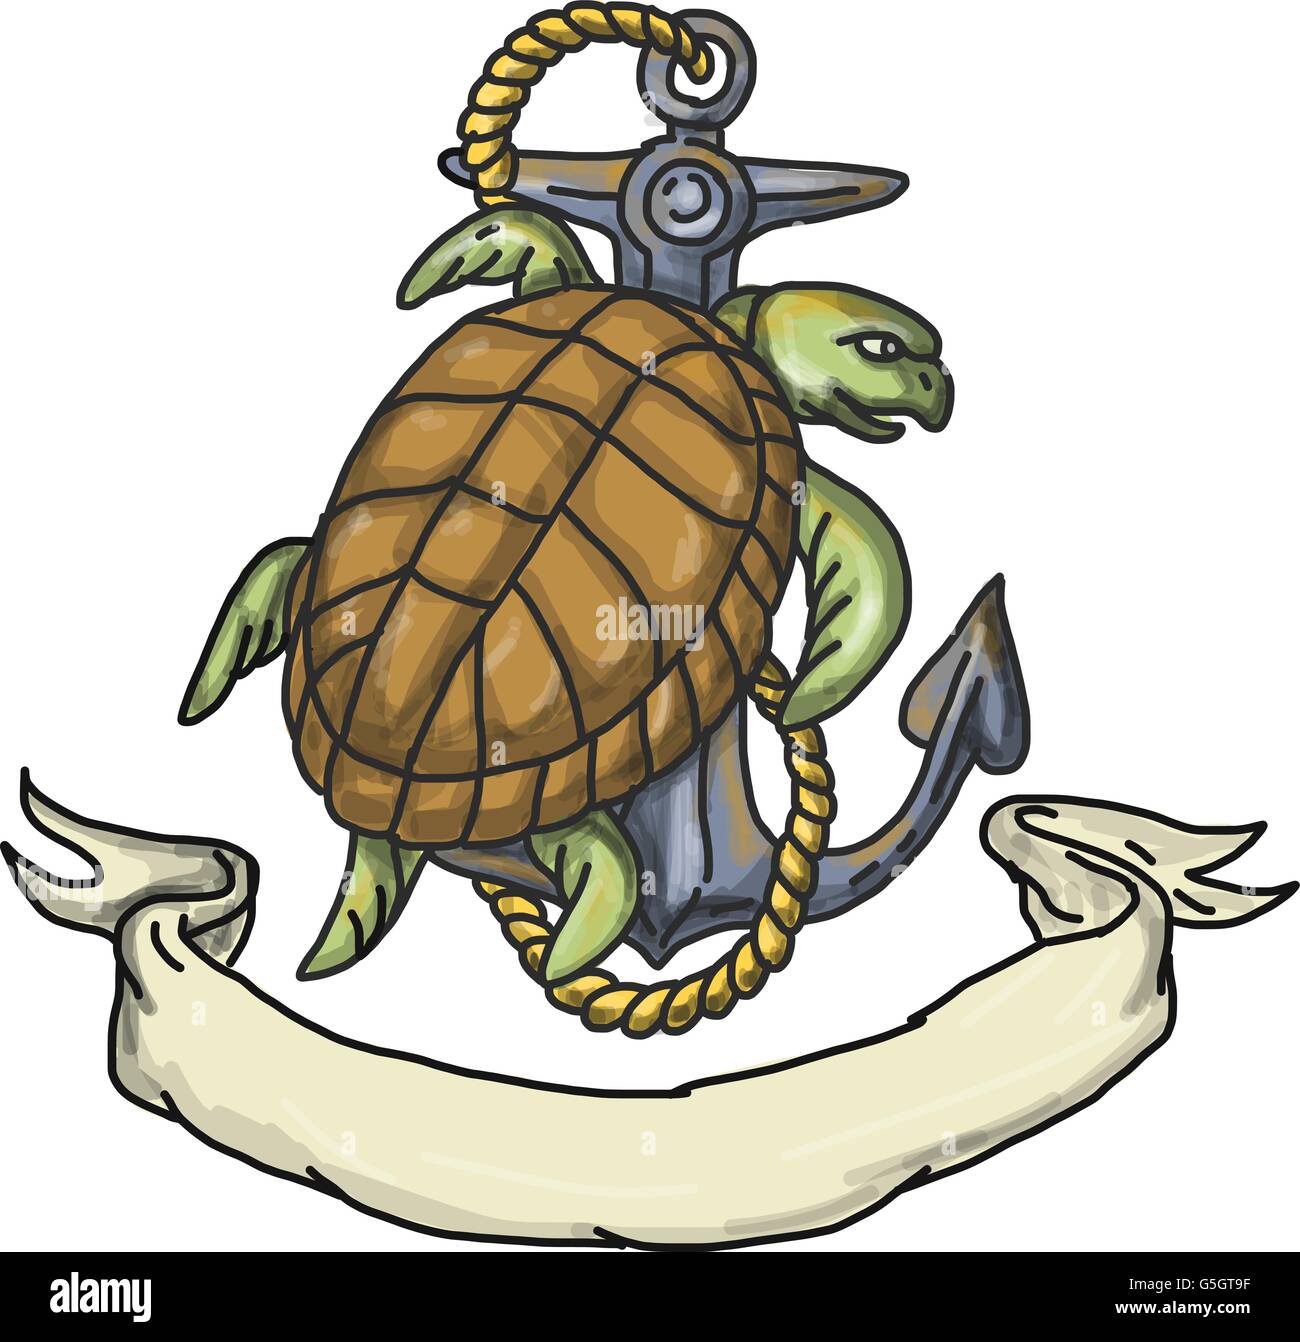 Style croquis dessin illustration d'une tortue de Kemp Lepidochelys kempii tortue de mer ou l'escalade sur le bateau ancre avec corde vue Illustration de Vecteur